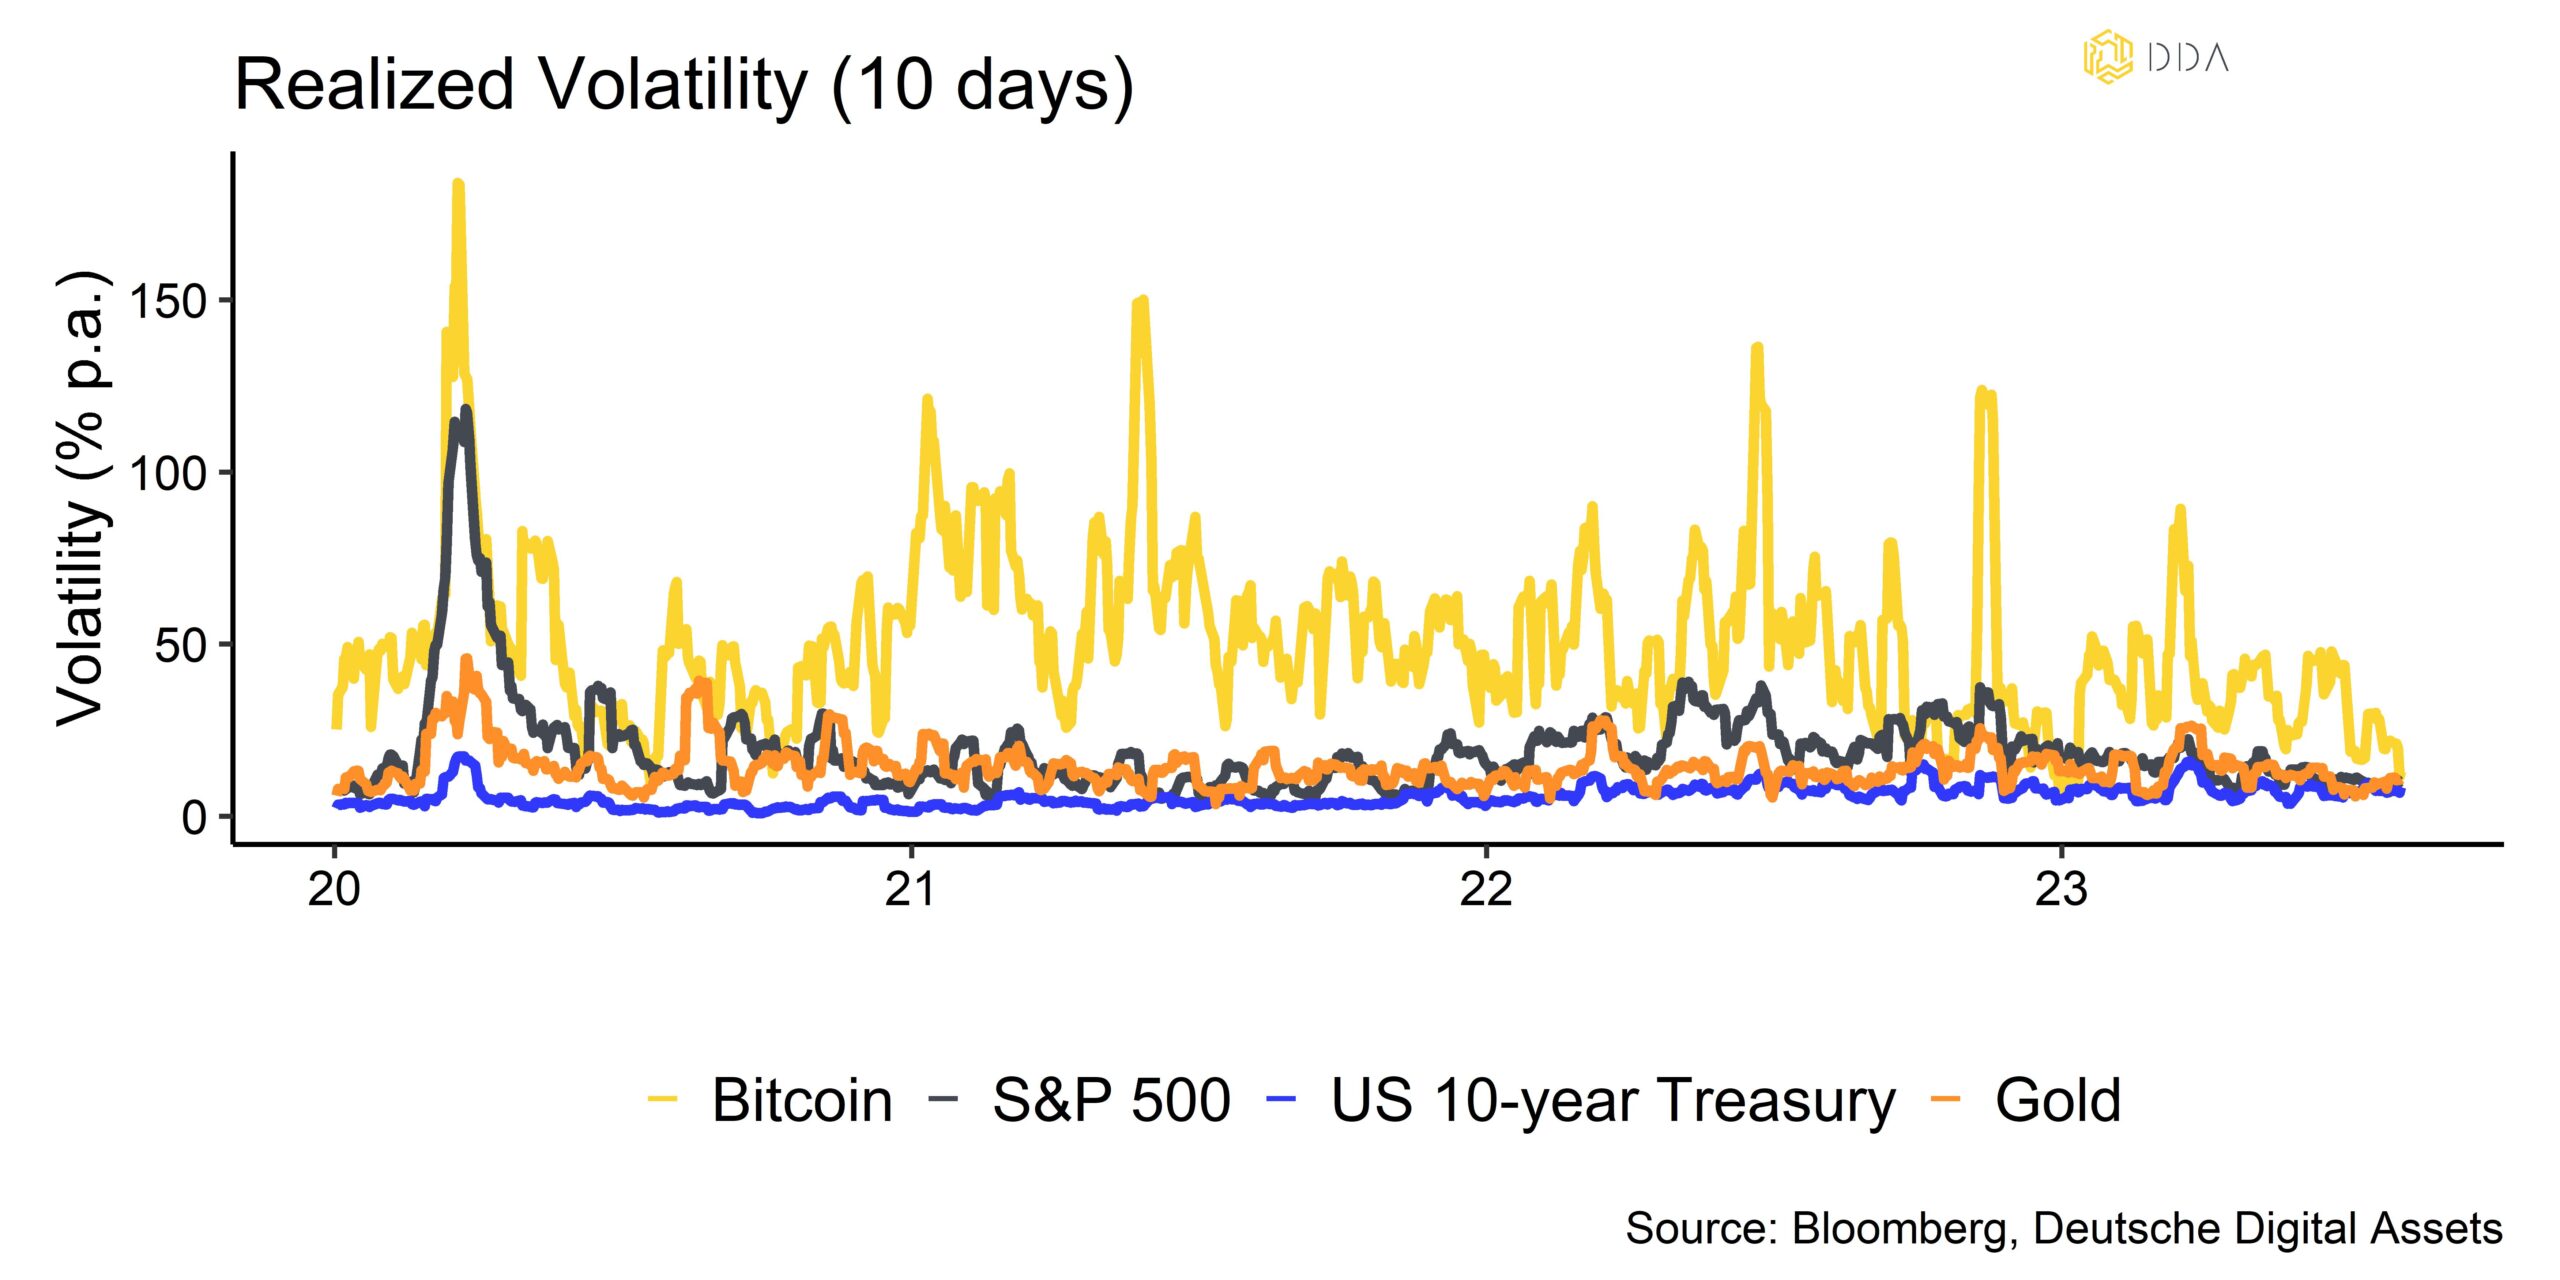 Bitcoin realised volatility, Crypto market pulse, crypto weekly newsletter, DDA newsletter Crypto Market pulse newsletter, crypto newsletter  